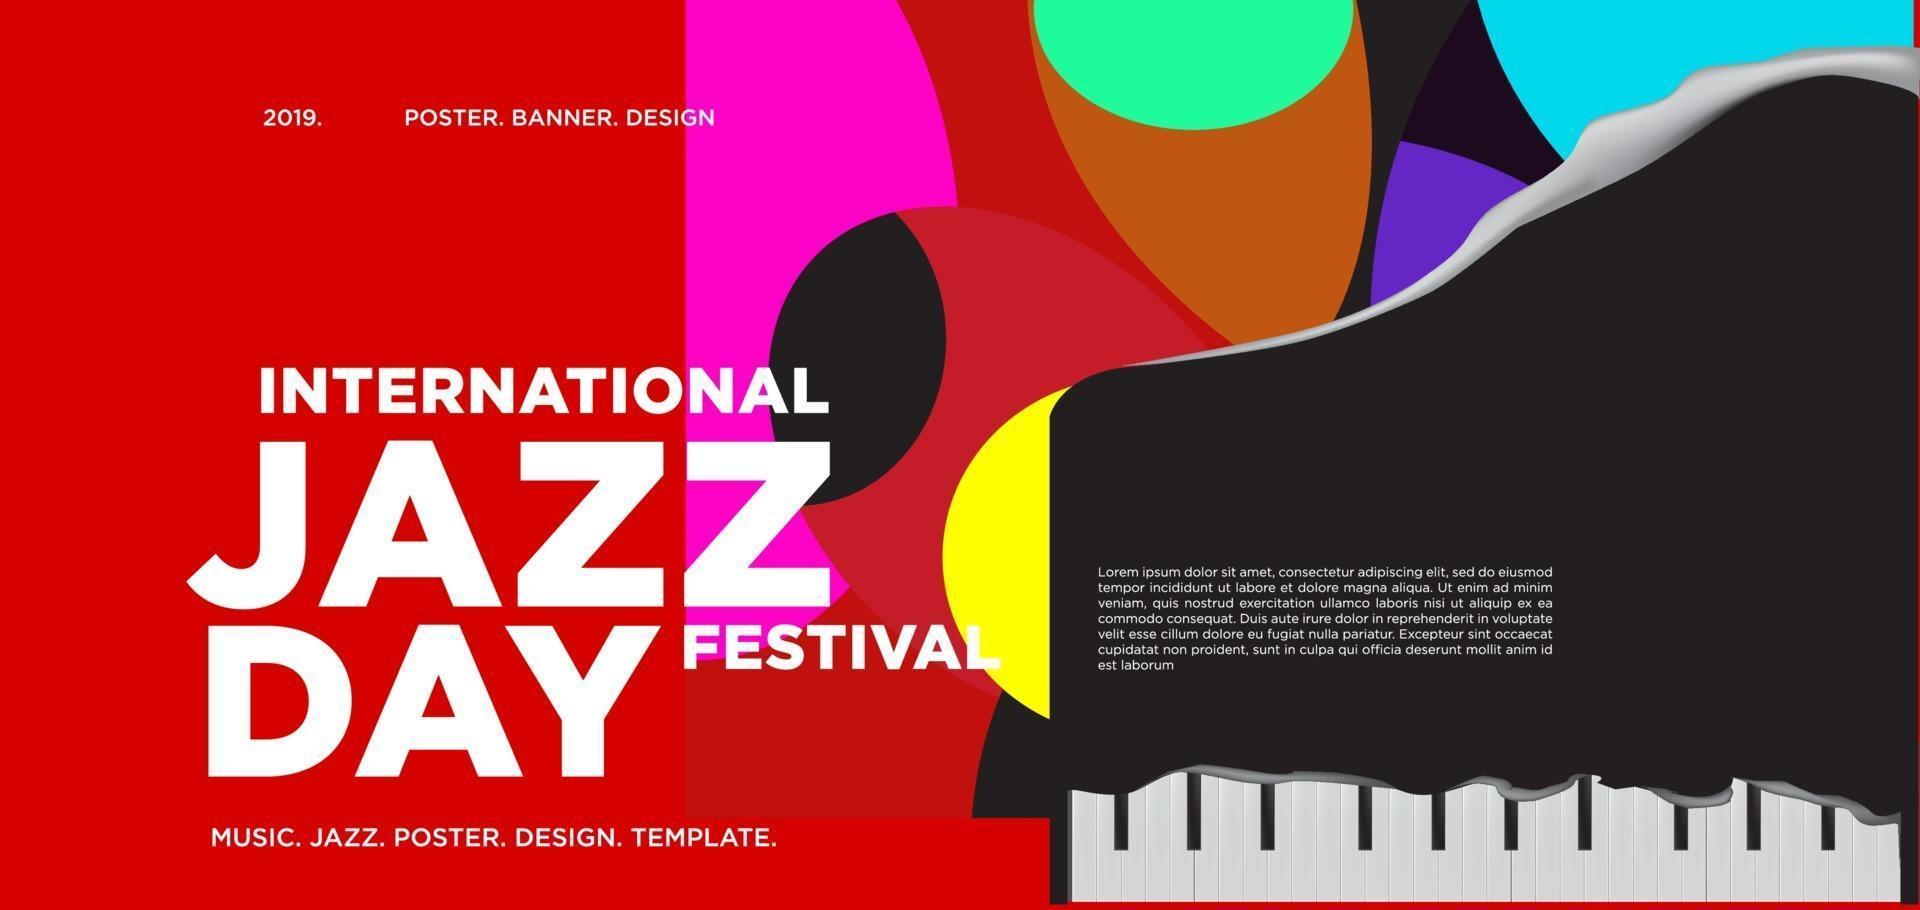 vettore colorato internazionale jazz giorno banner design